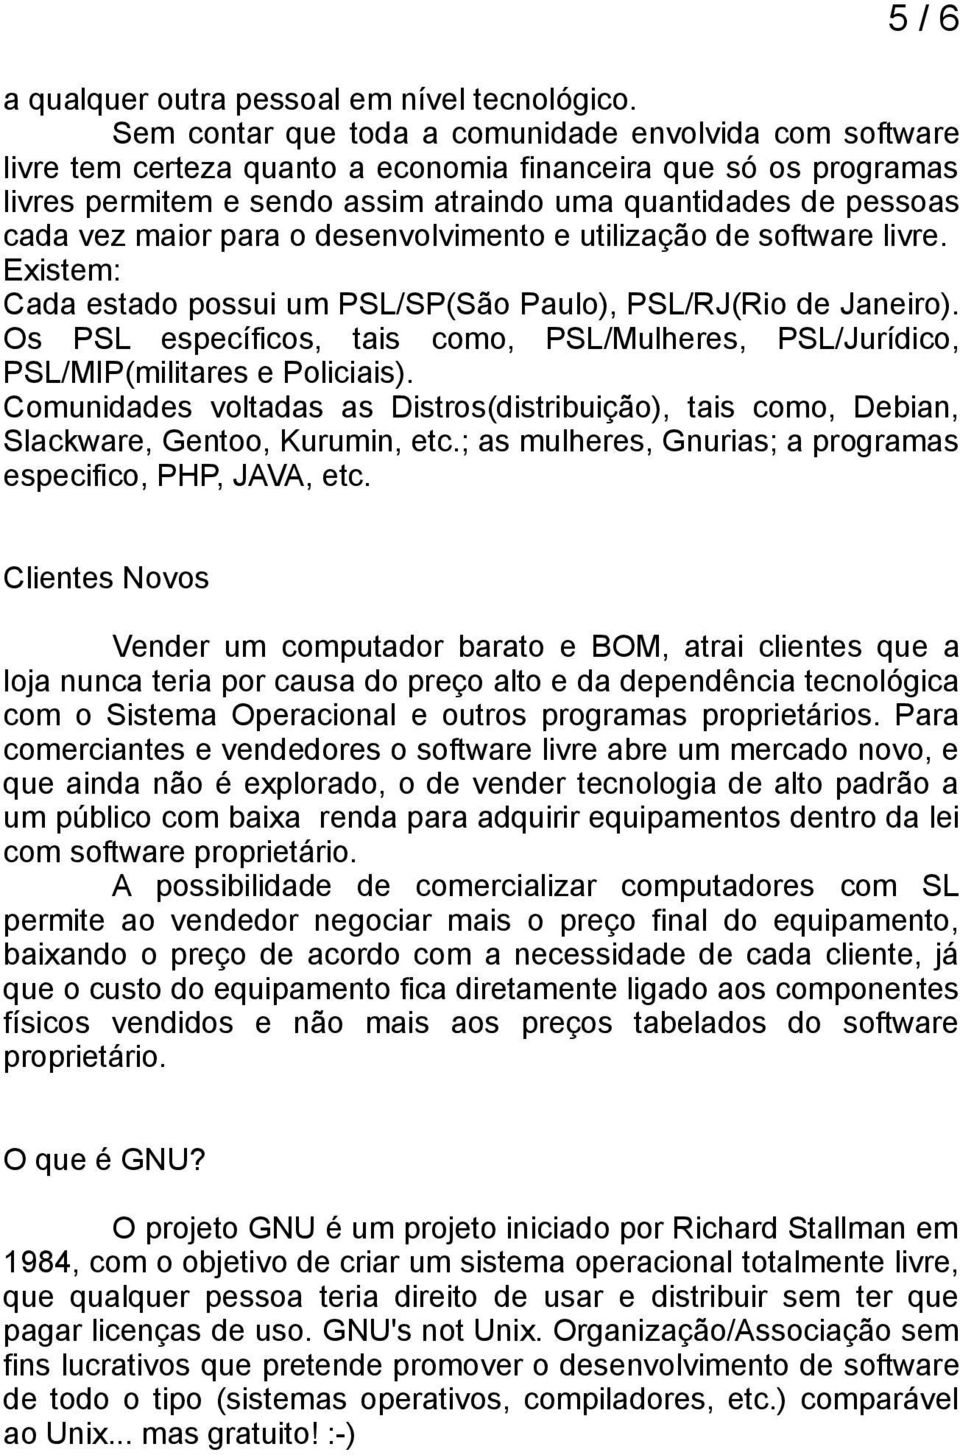 maior para o desenvolvimento e utilização de software livre. Existem: Cada estado possui um PSL/SP(São Paulo), PSL/RJ(Rio de Janeiro).